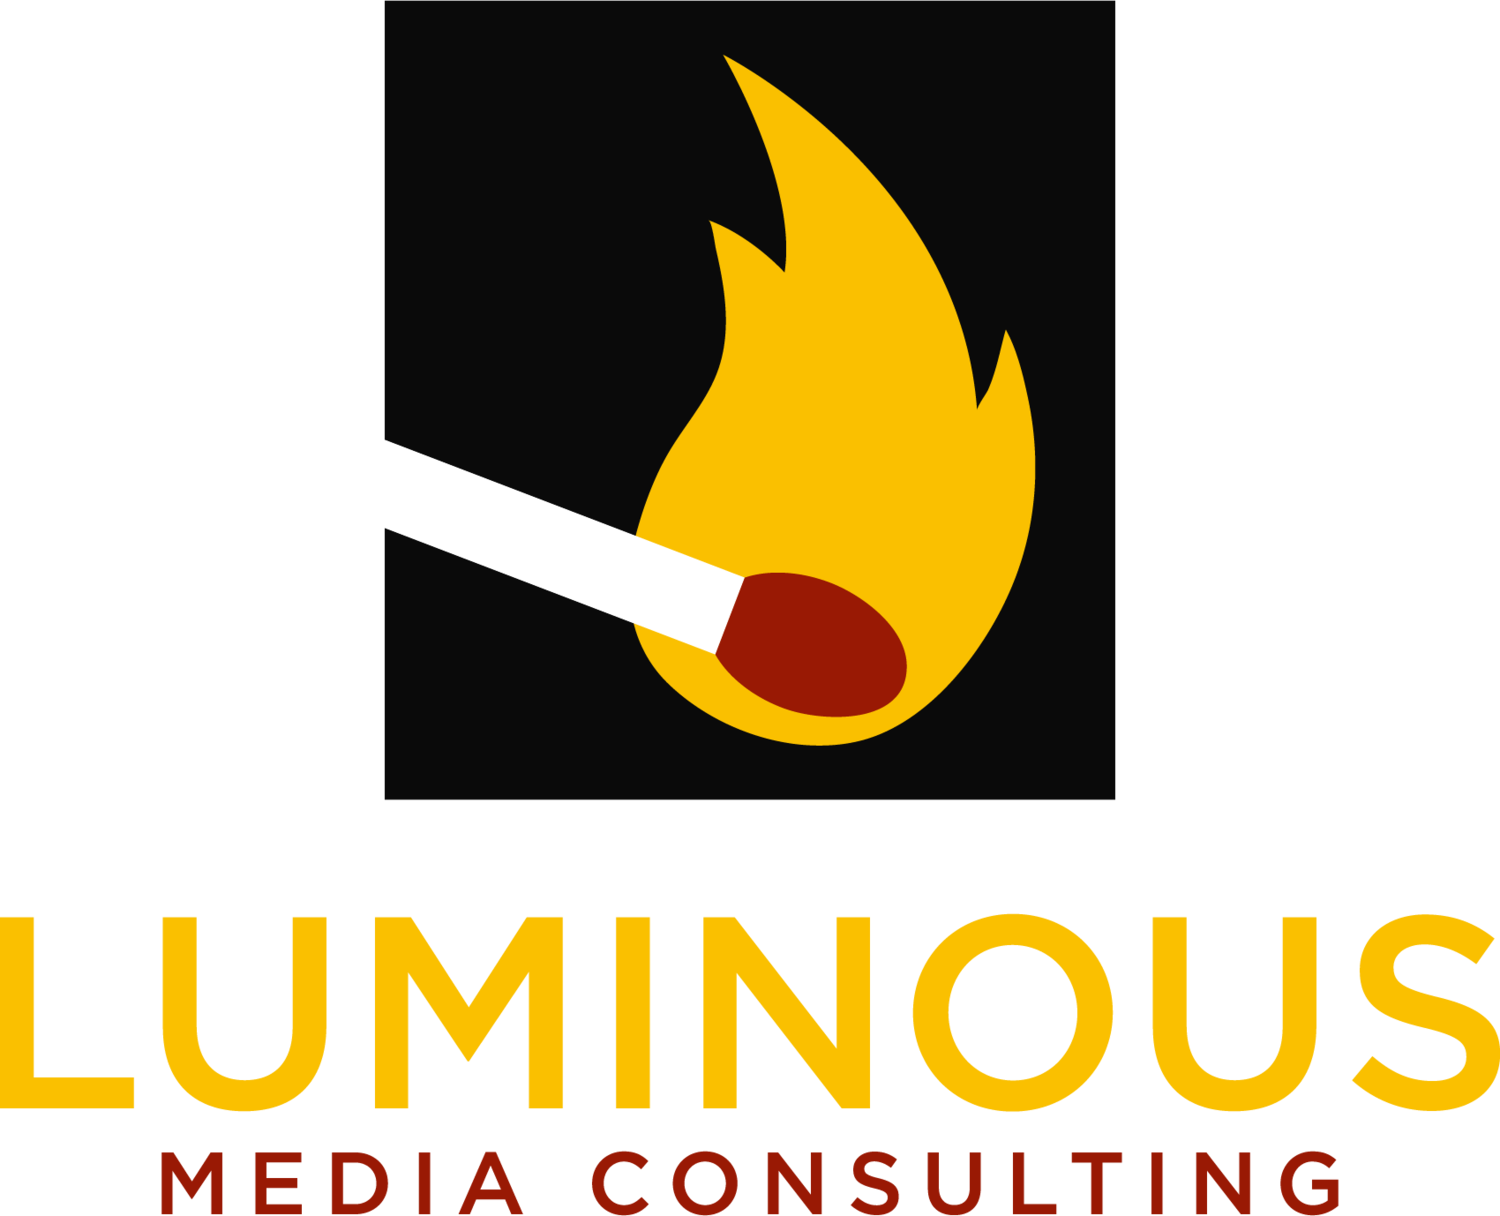 Luminous Media Consulting